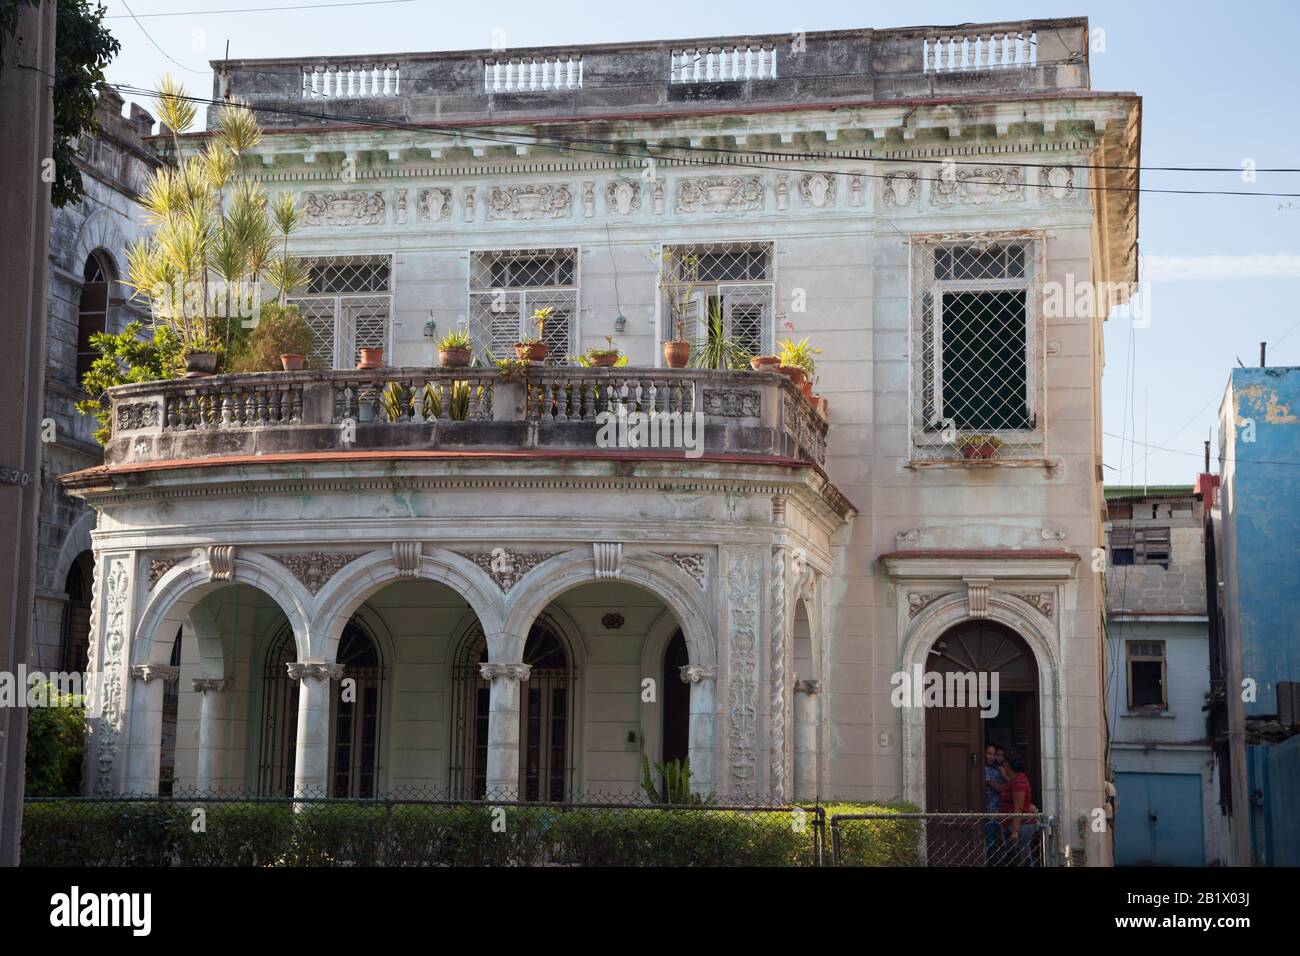 Una bella casa storica a l'Avana, Cuba con archi, un ponte, e paesaggio esterno Foto Stock